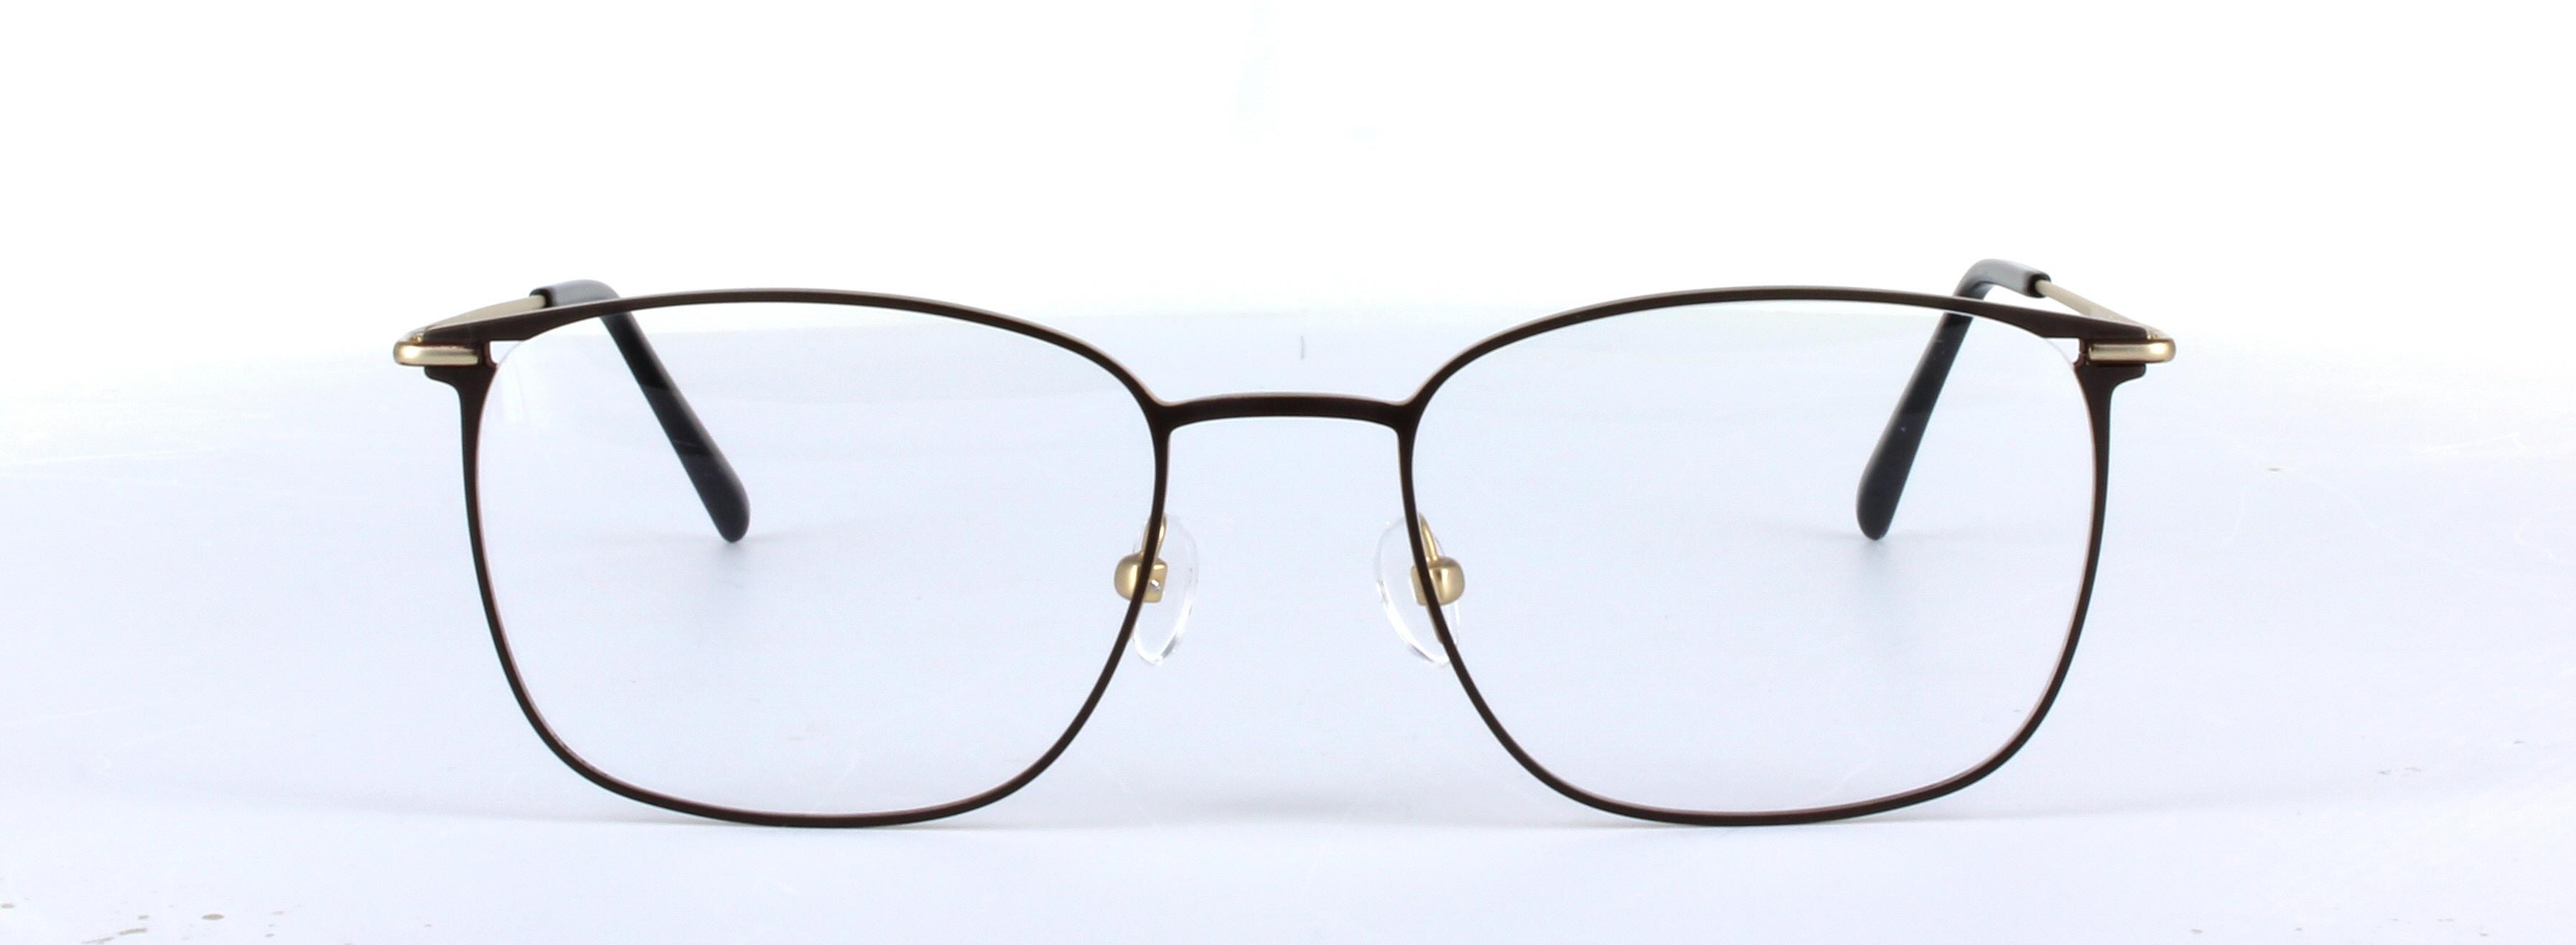 Hayden Brown Full Rim Rectangular Metal Glasses - Image View 5